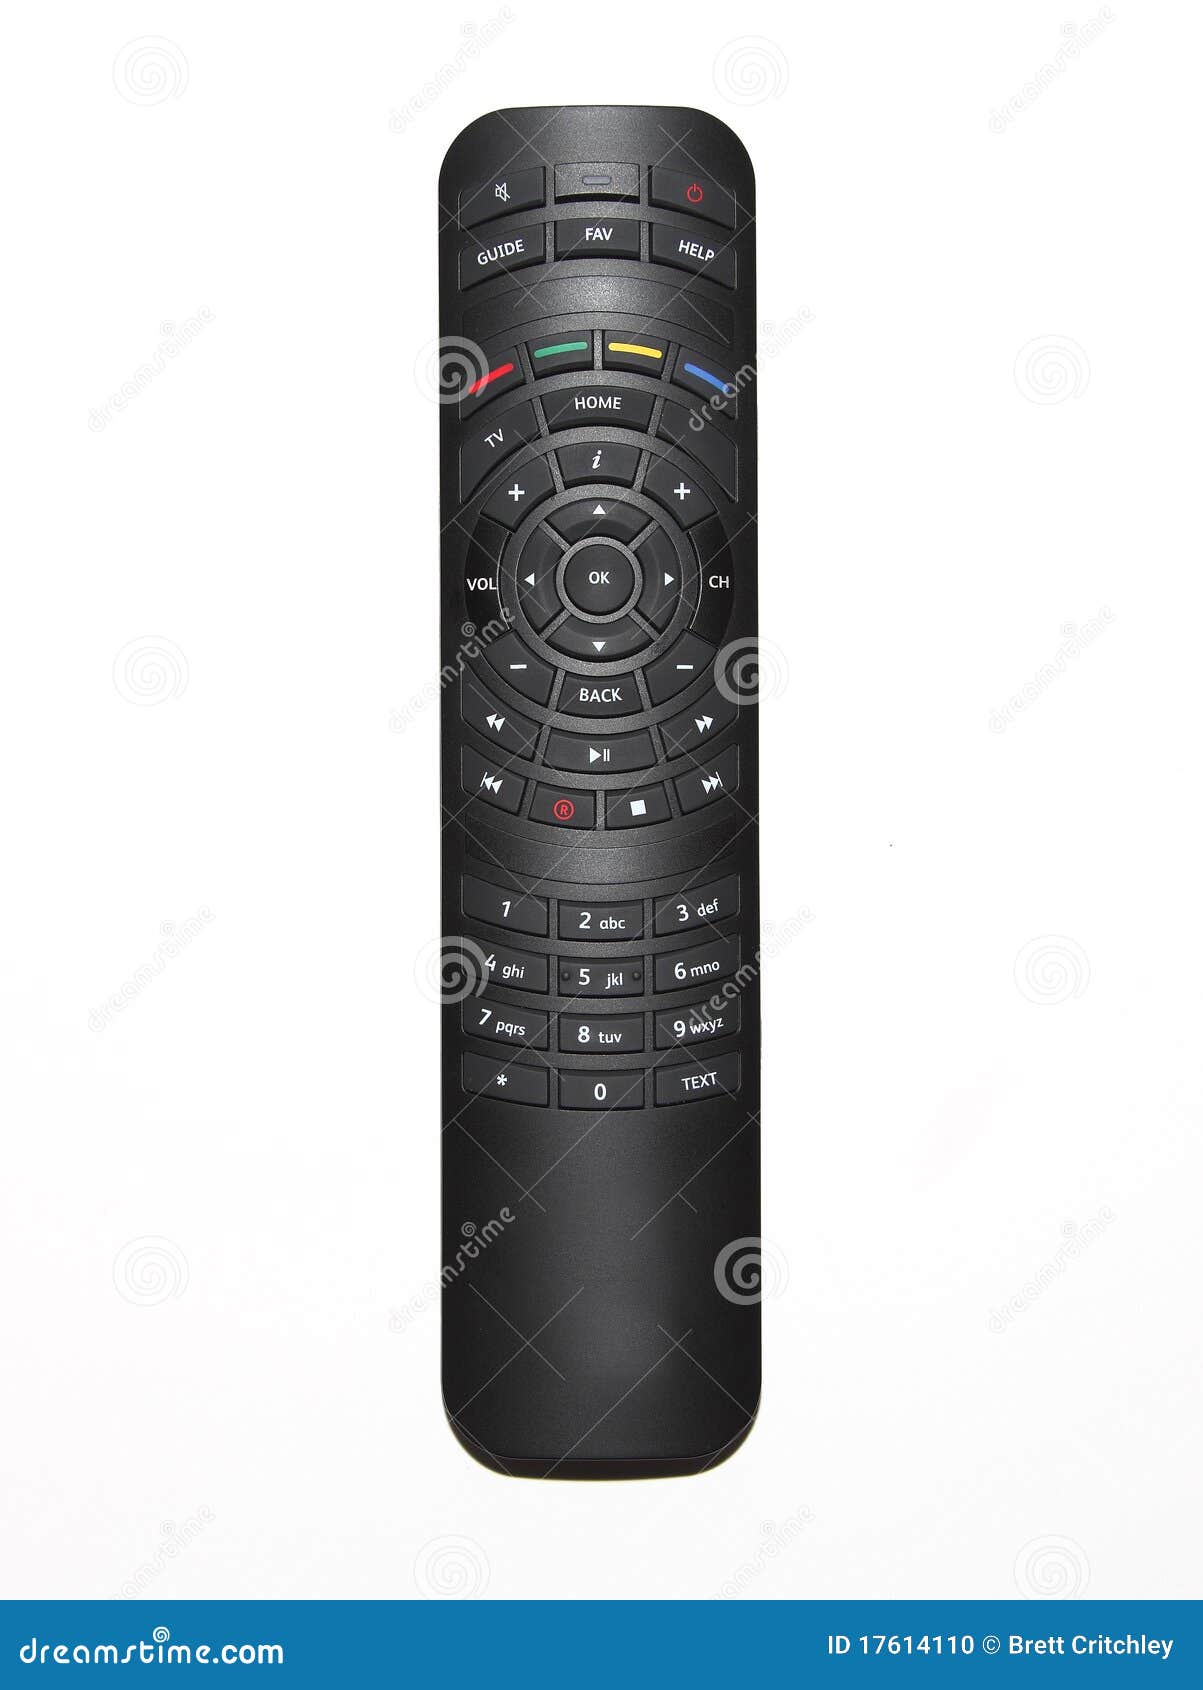 tv remote control